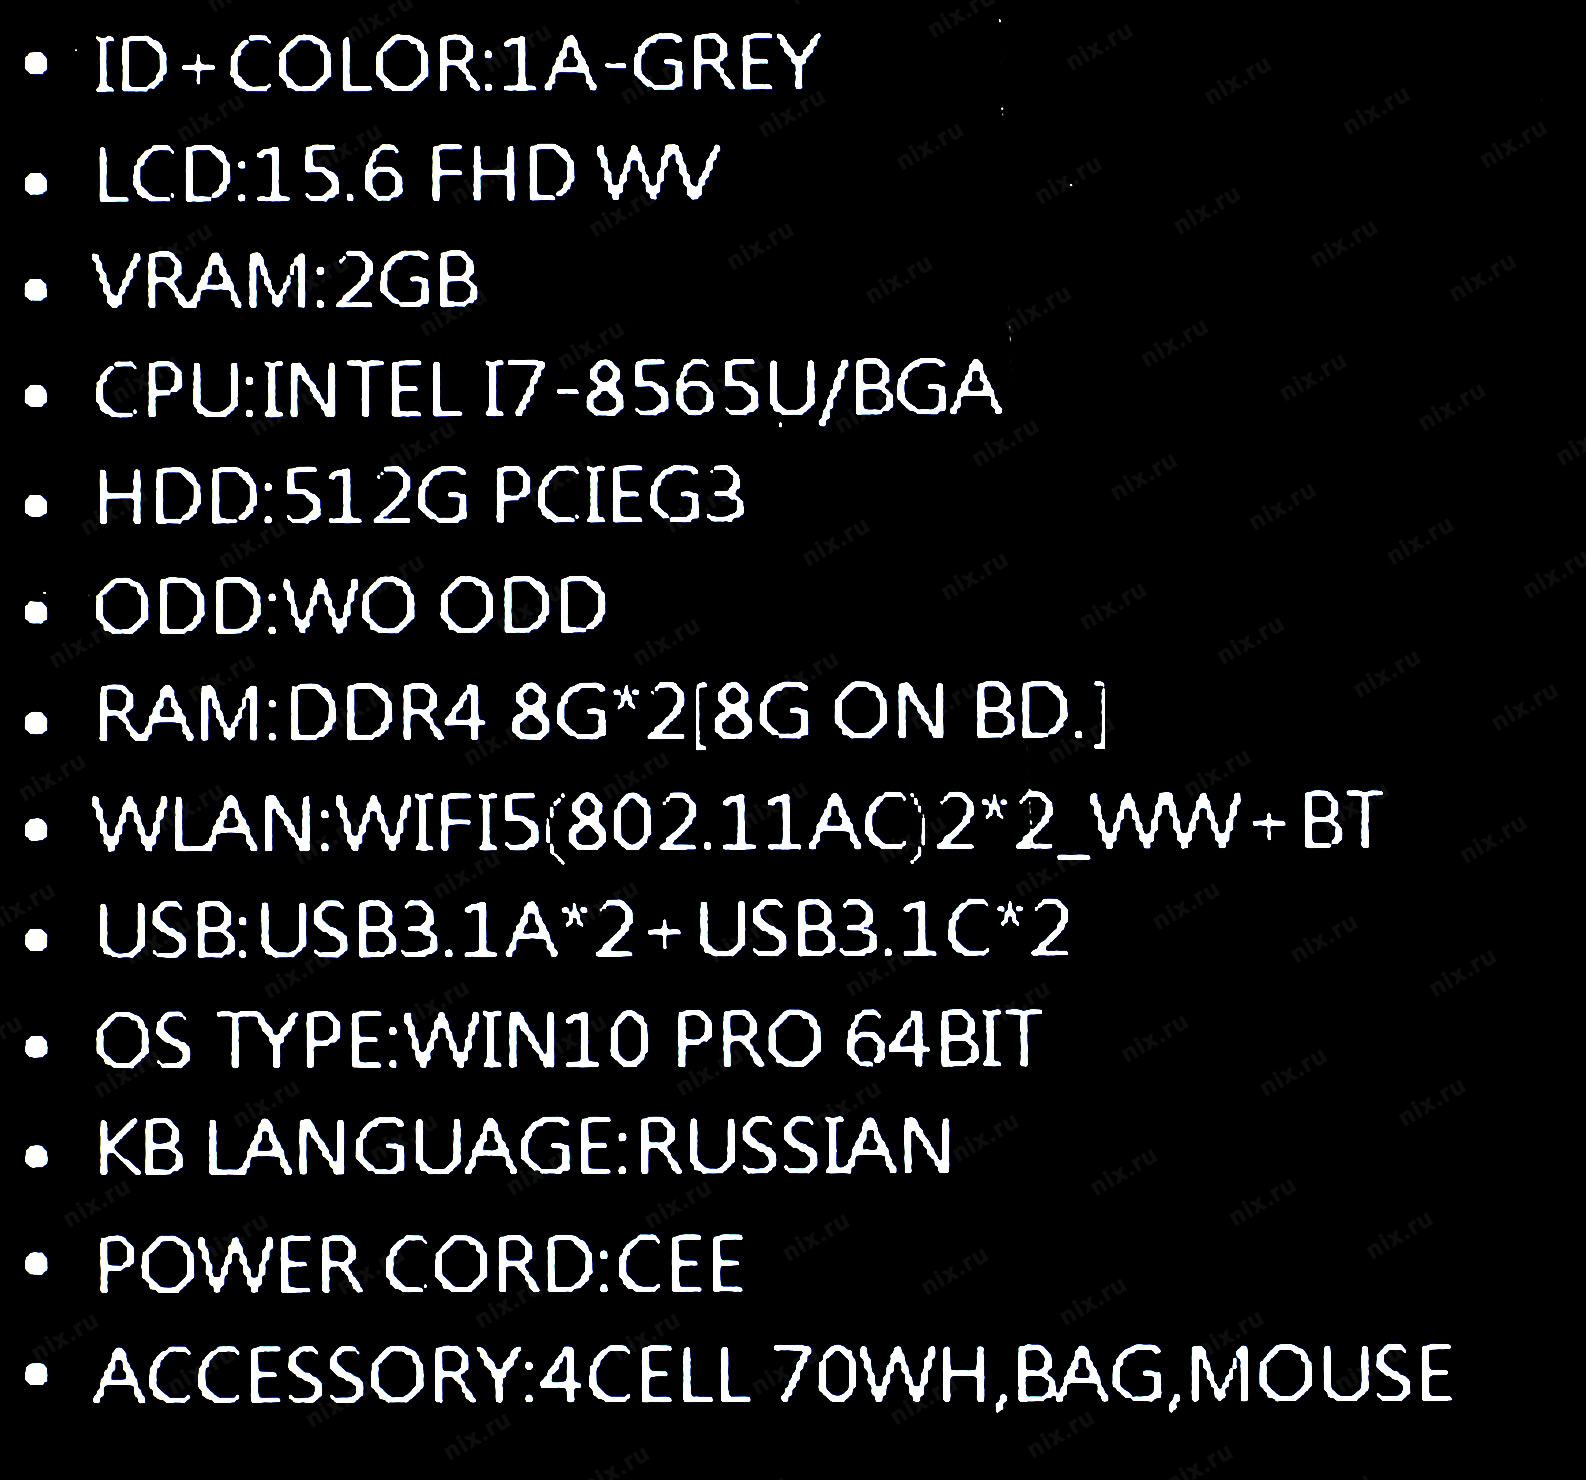 Ноутбук Asus Pro Bq0306r Купить